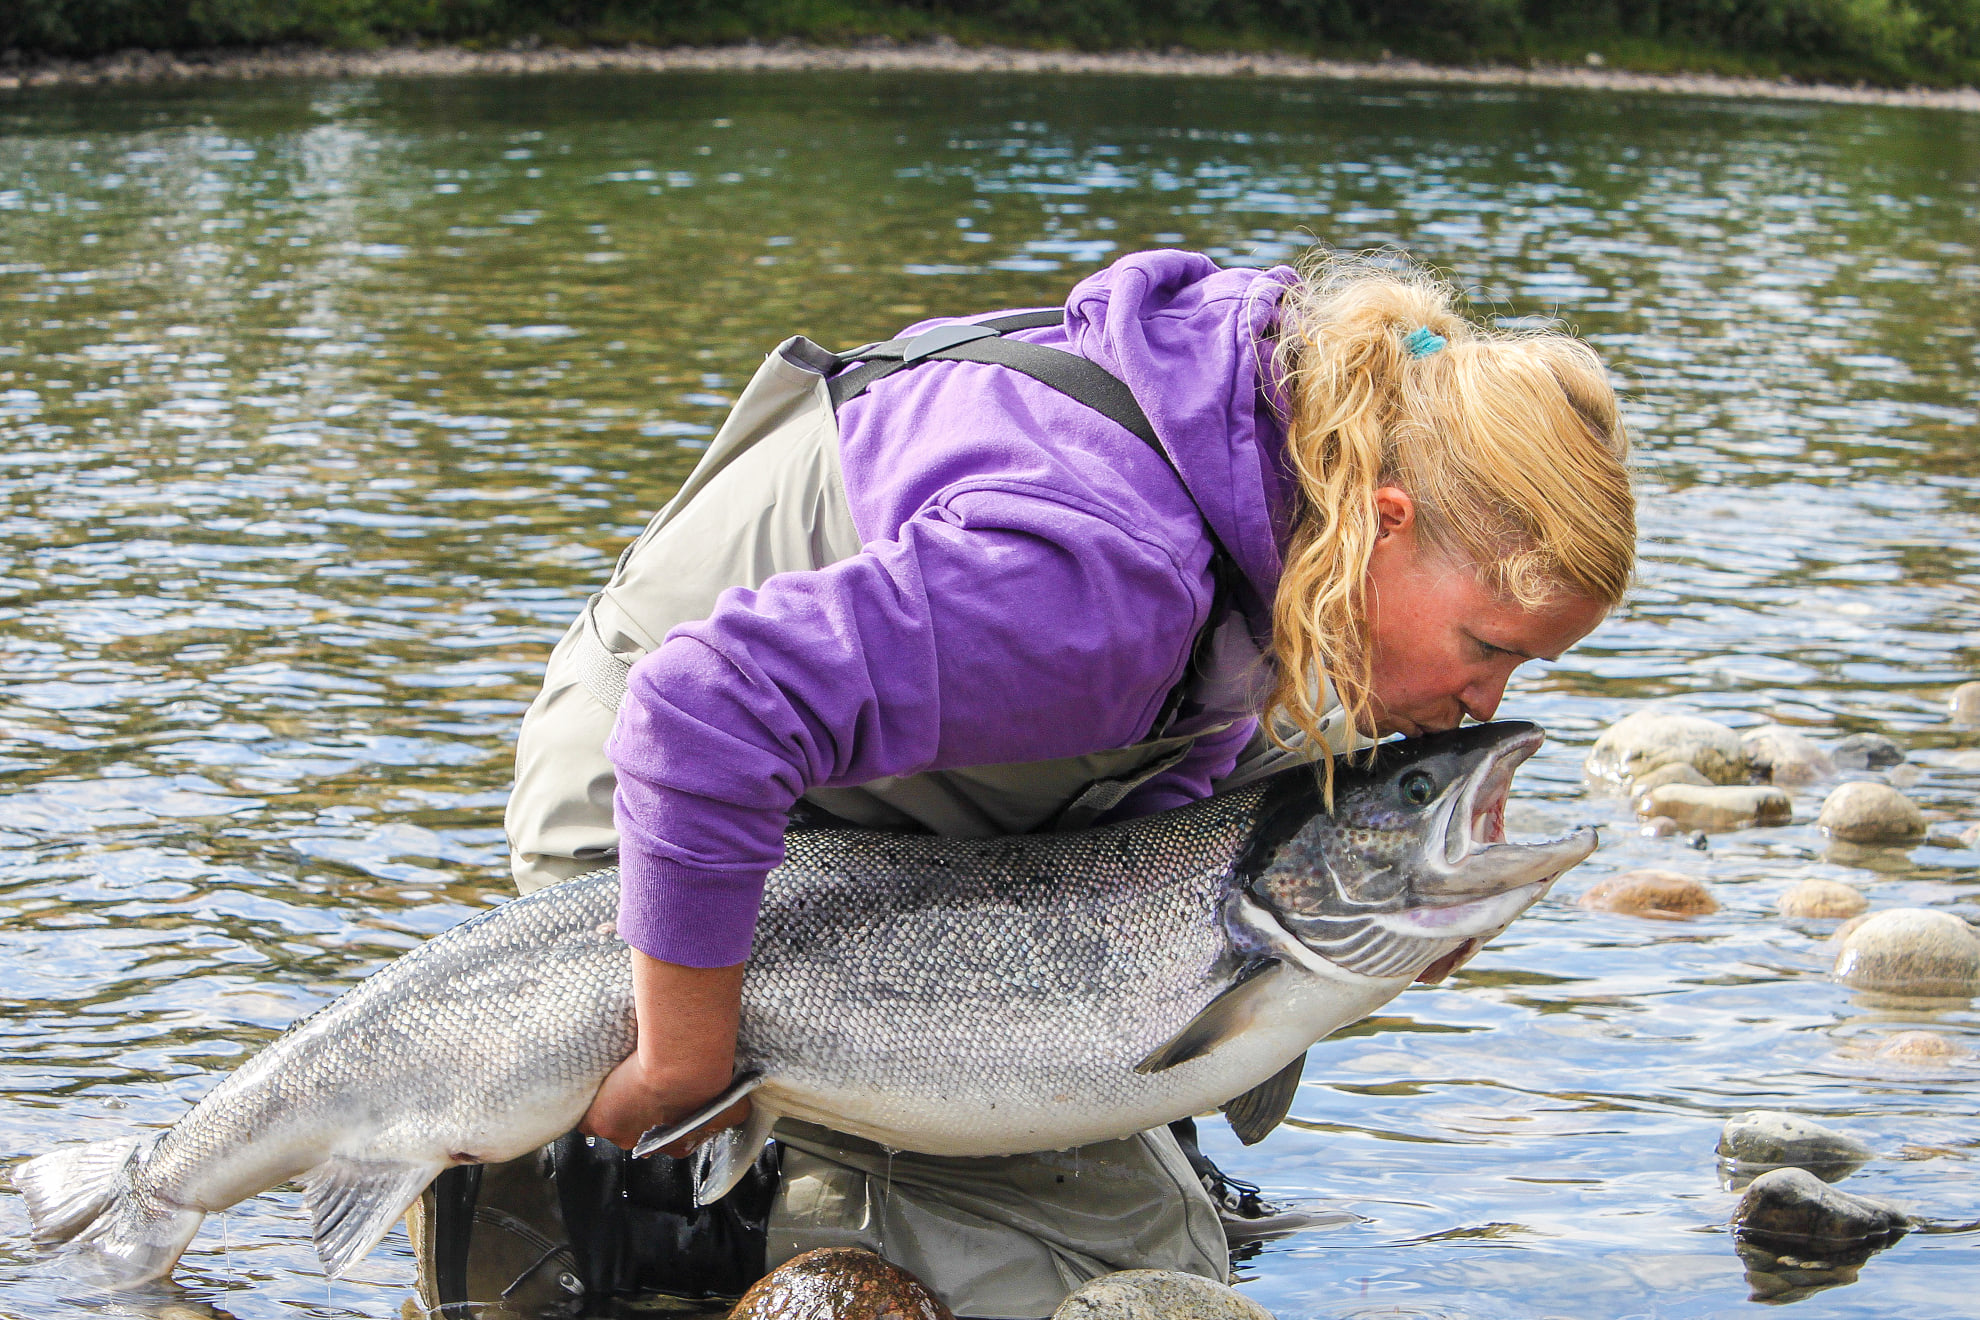 Malselv River, Norway, Norway Atlantic Salmon, fly fishing Norway, Aardvark McLeod